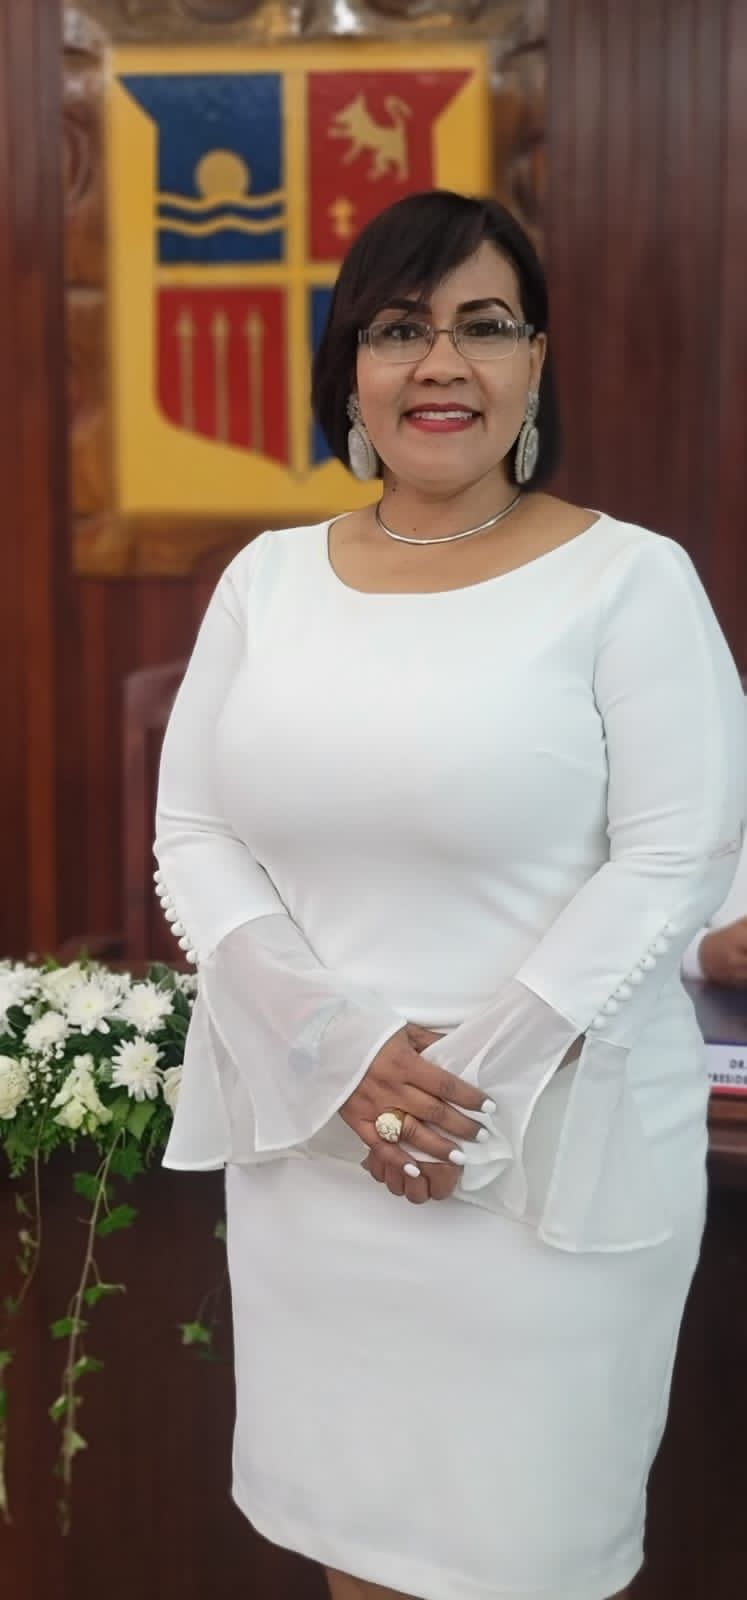 Esperanza Concepción Guzmán